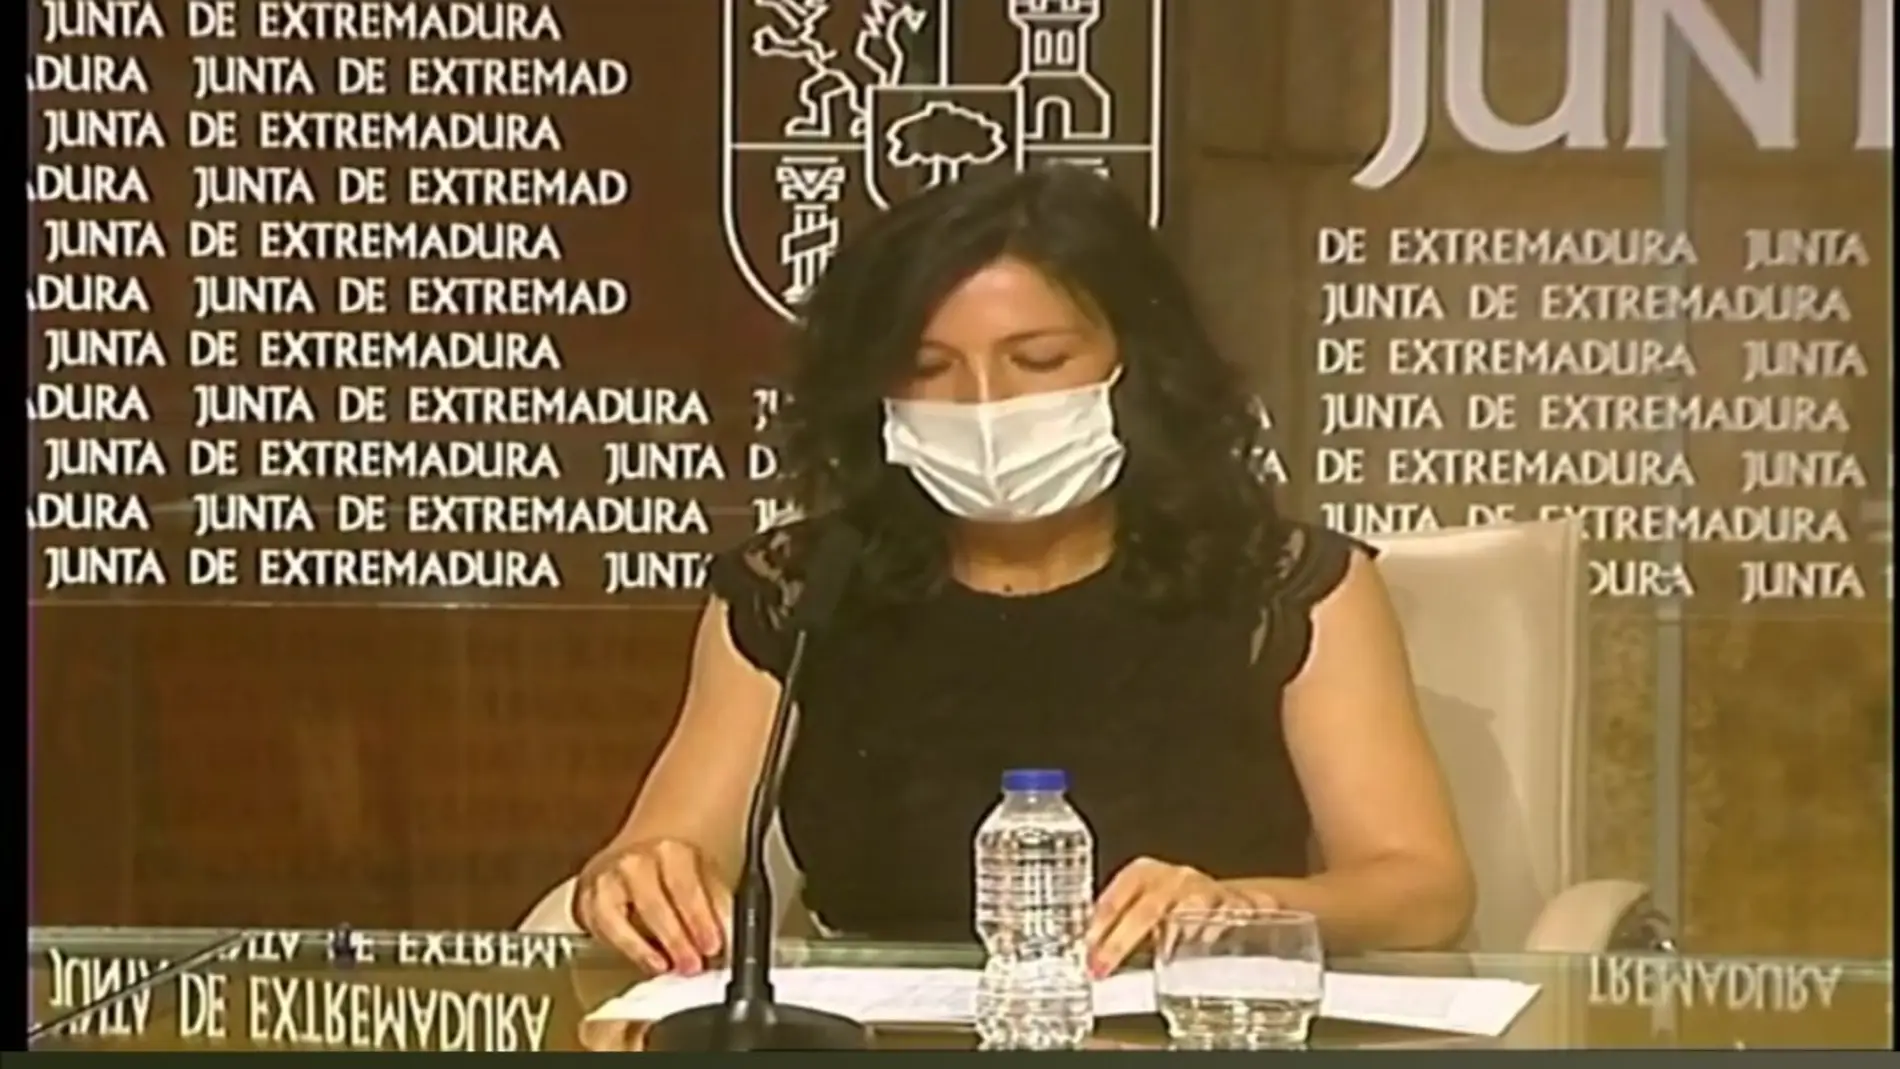 Esther Gutiérrez, consejera de educación y empleo